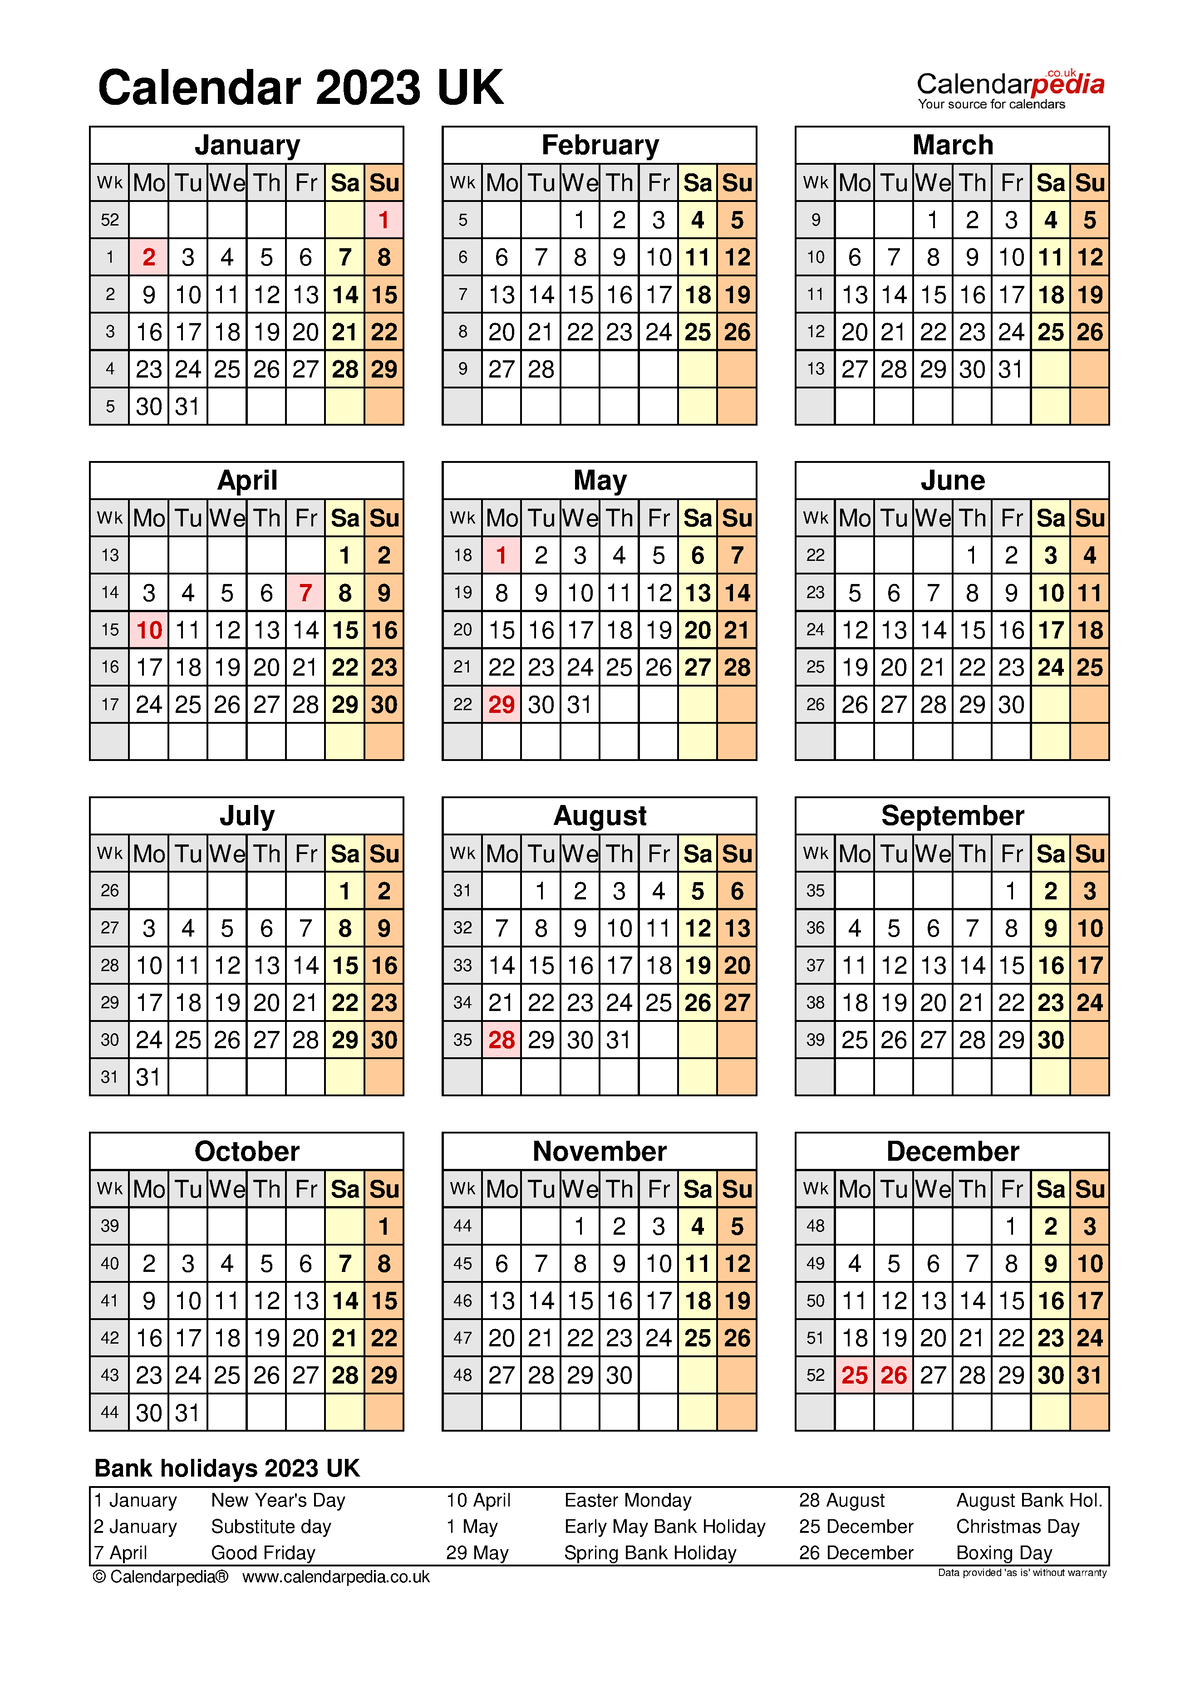 Calendar 2023 portrait year at a glance Calendar 2023 UK W kMo TuWeTh